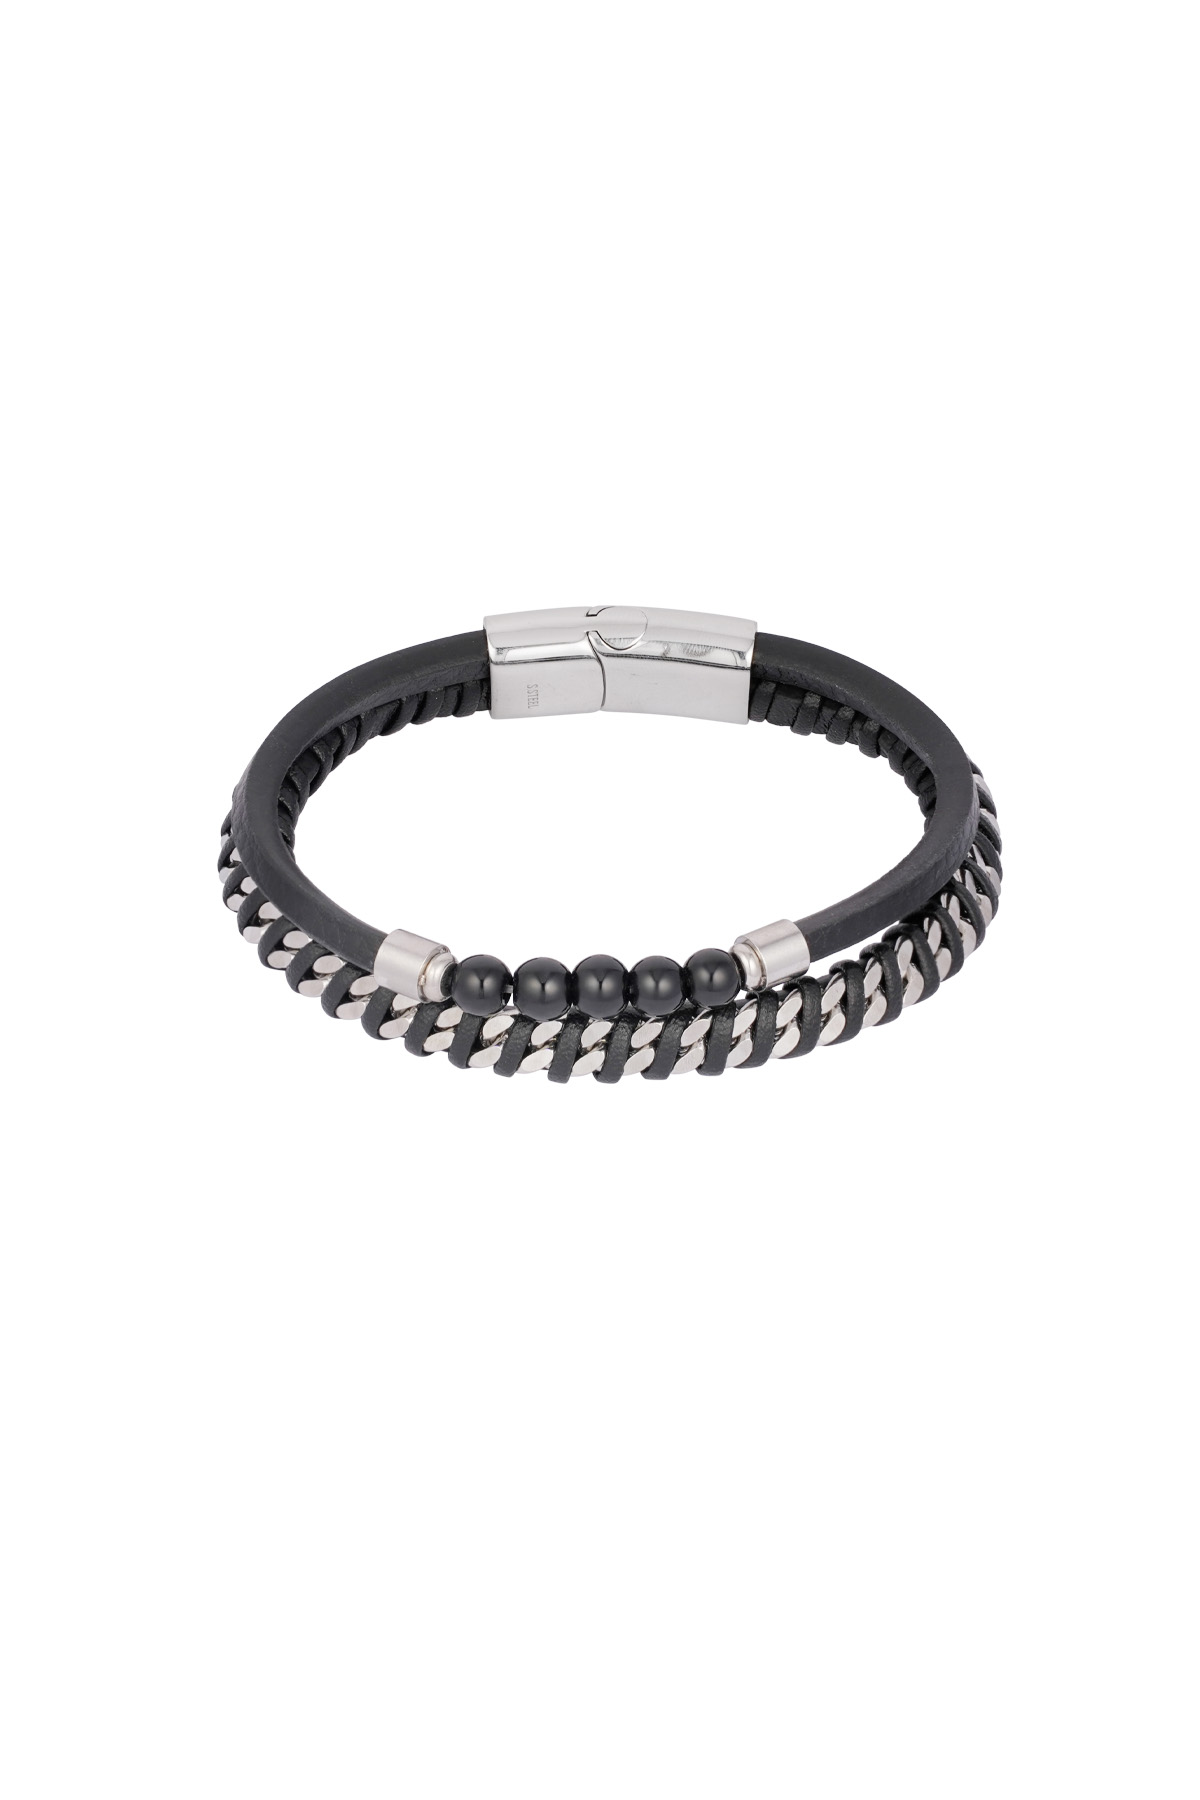 Bracelet homme phénix - argent noir 